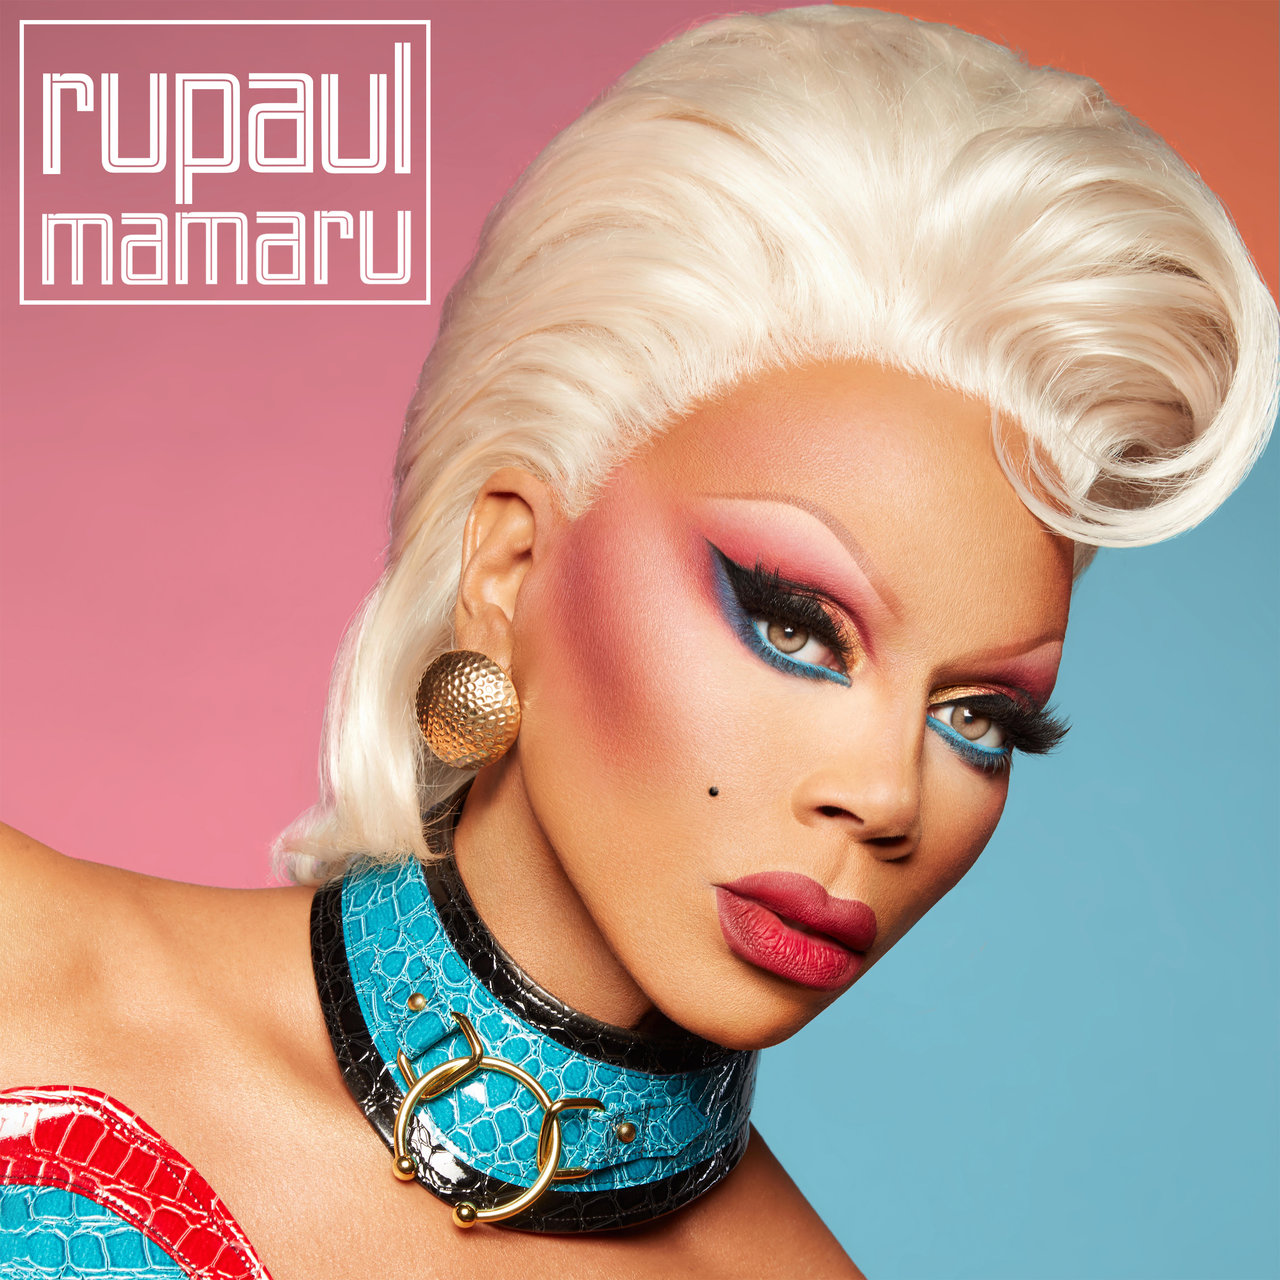 RuPaul MAMARU cover artwork